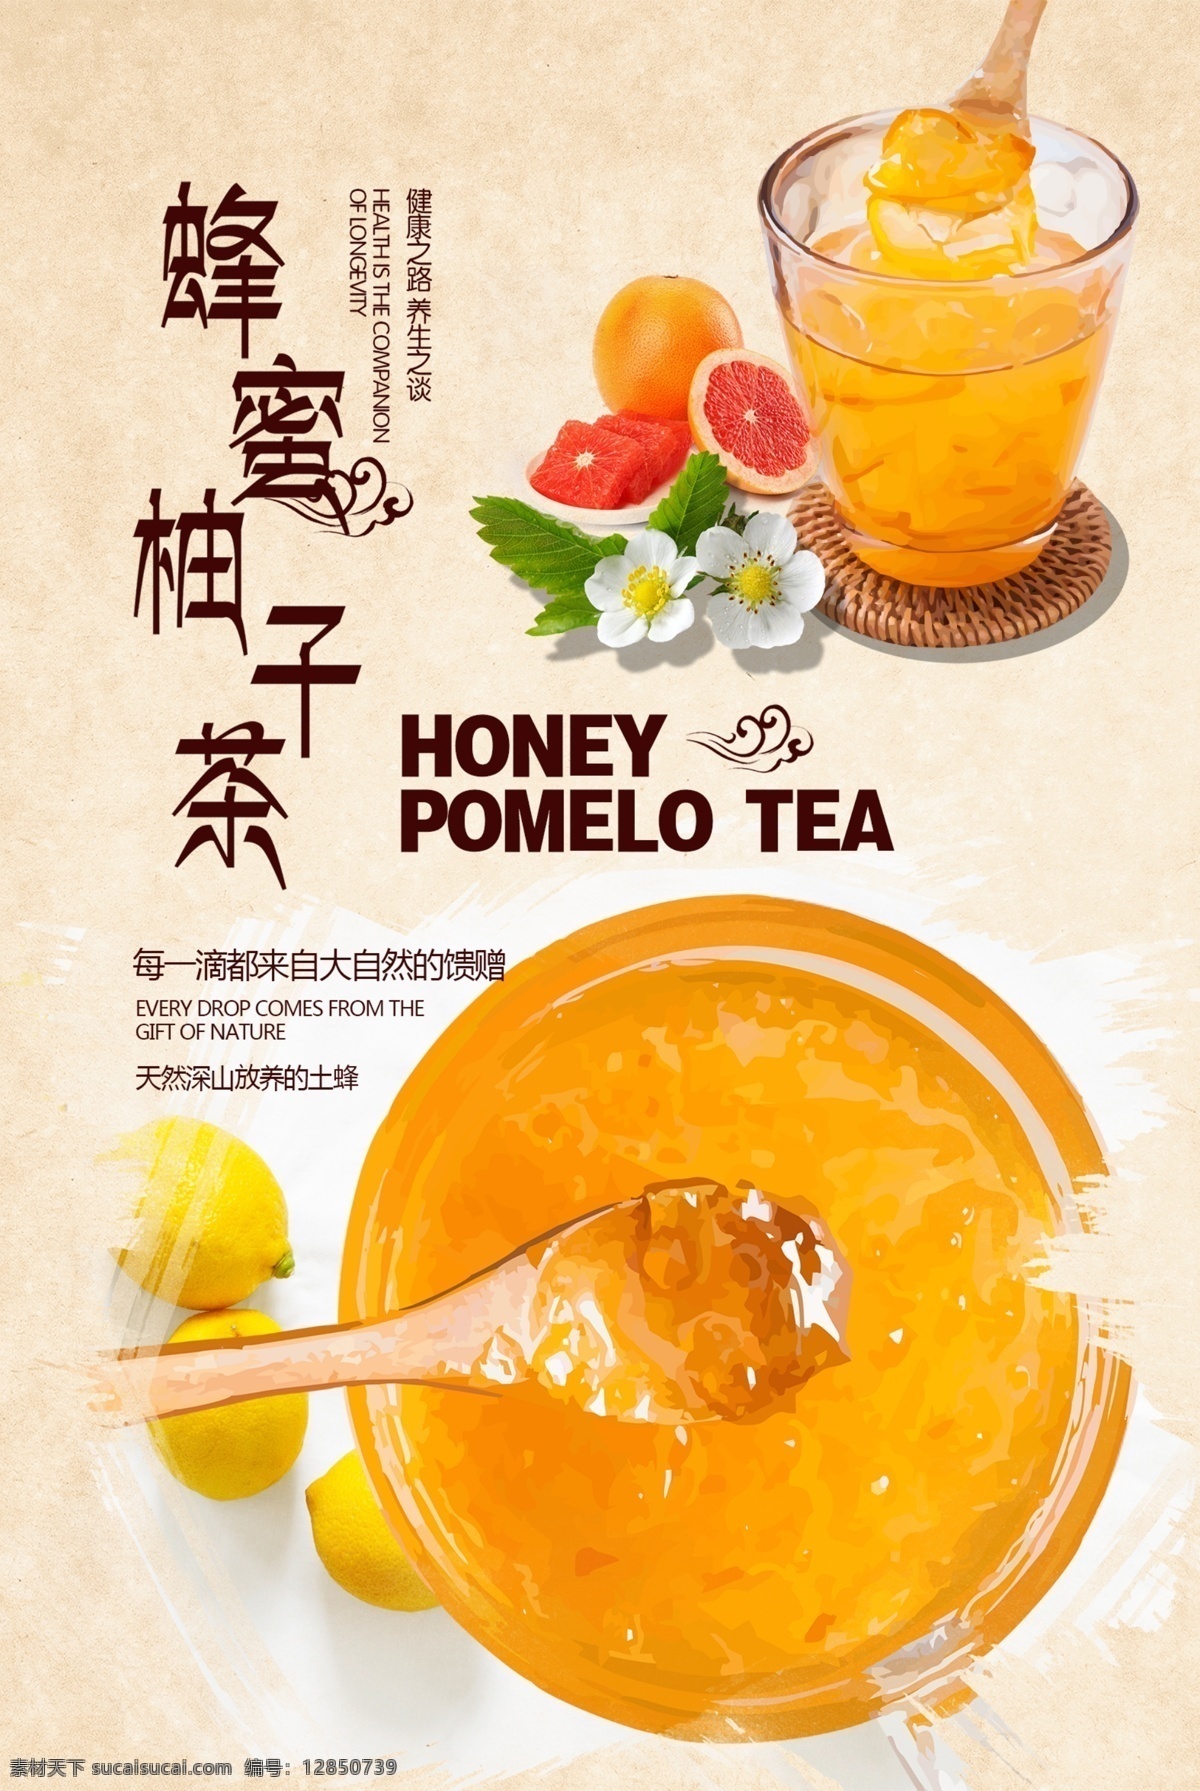 蜂蜜柚子茶 蜂蜜 夏日饮料 奶茶海报 蜂蜜柚子